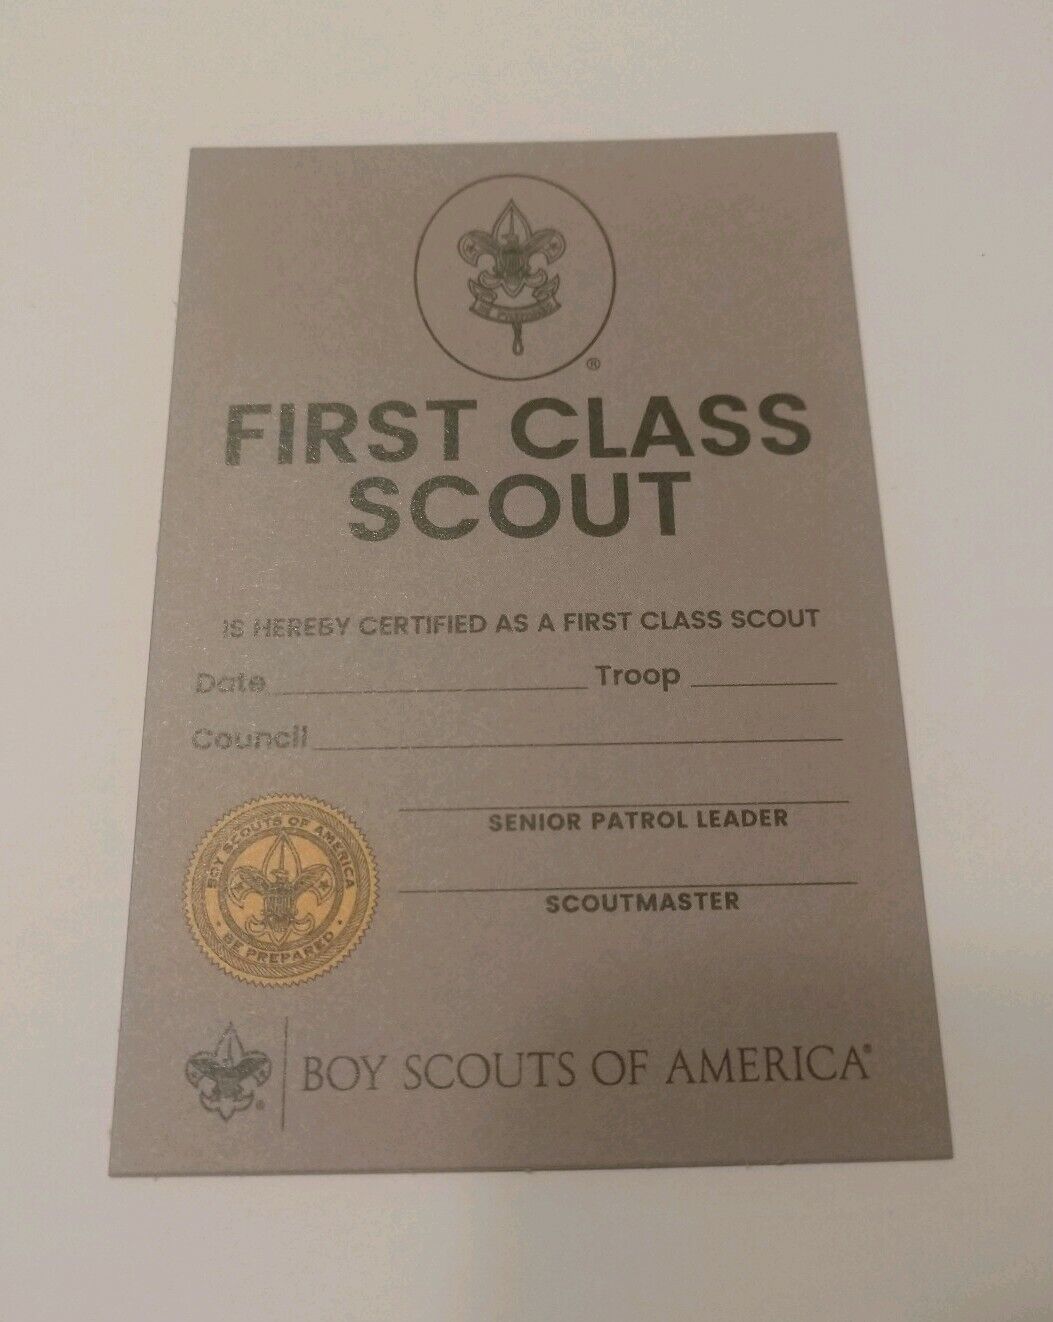 2019 First Class Scout Rank Rank Card New Design